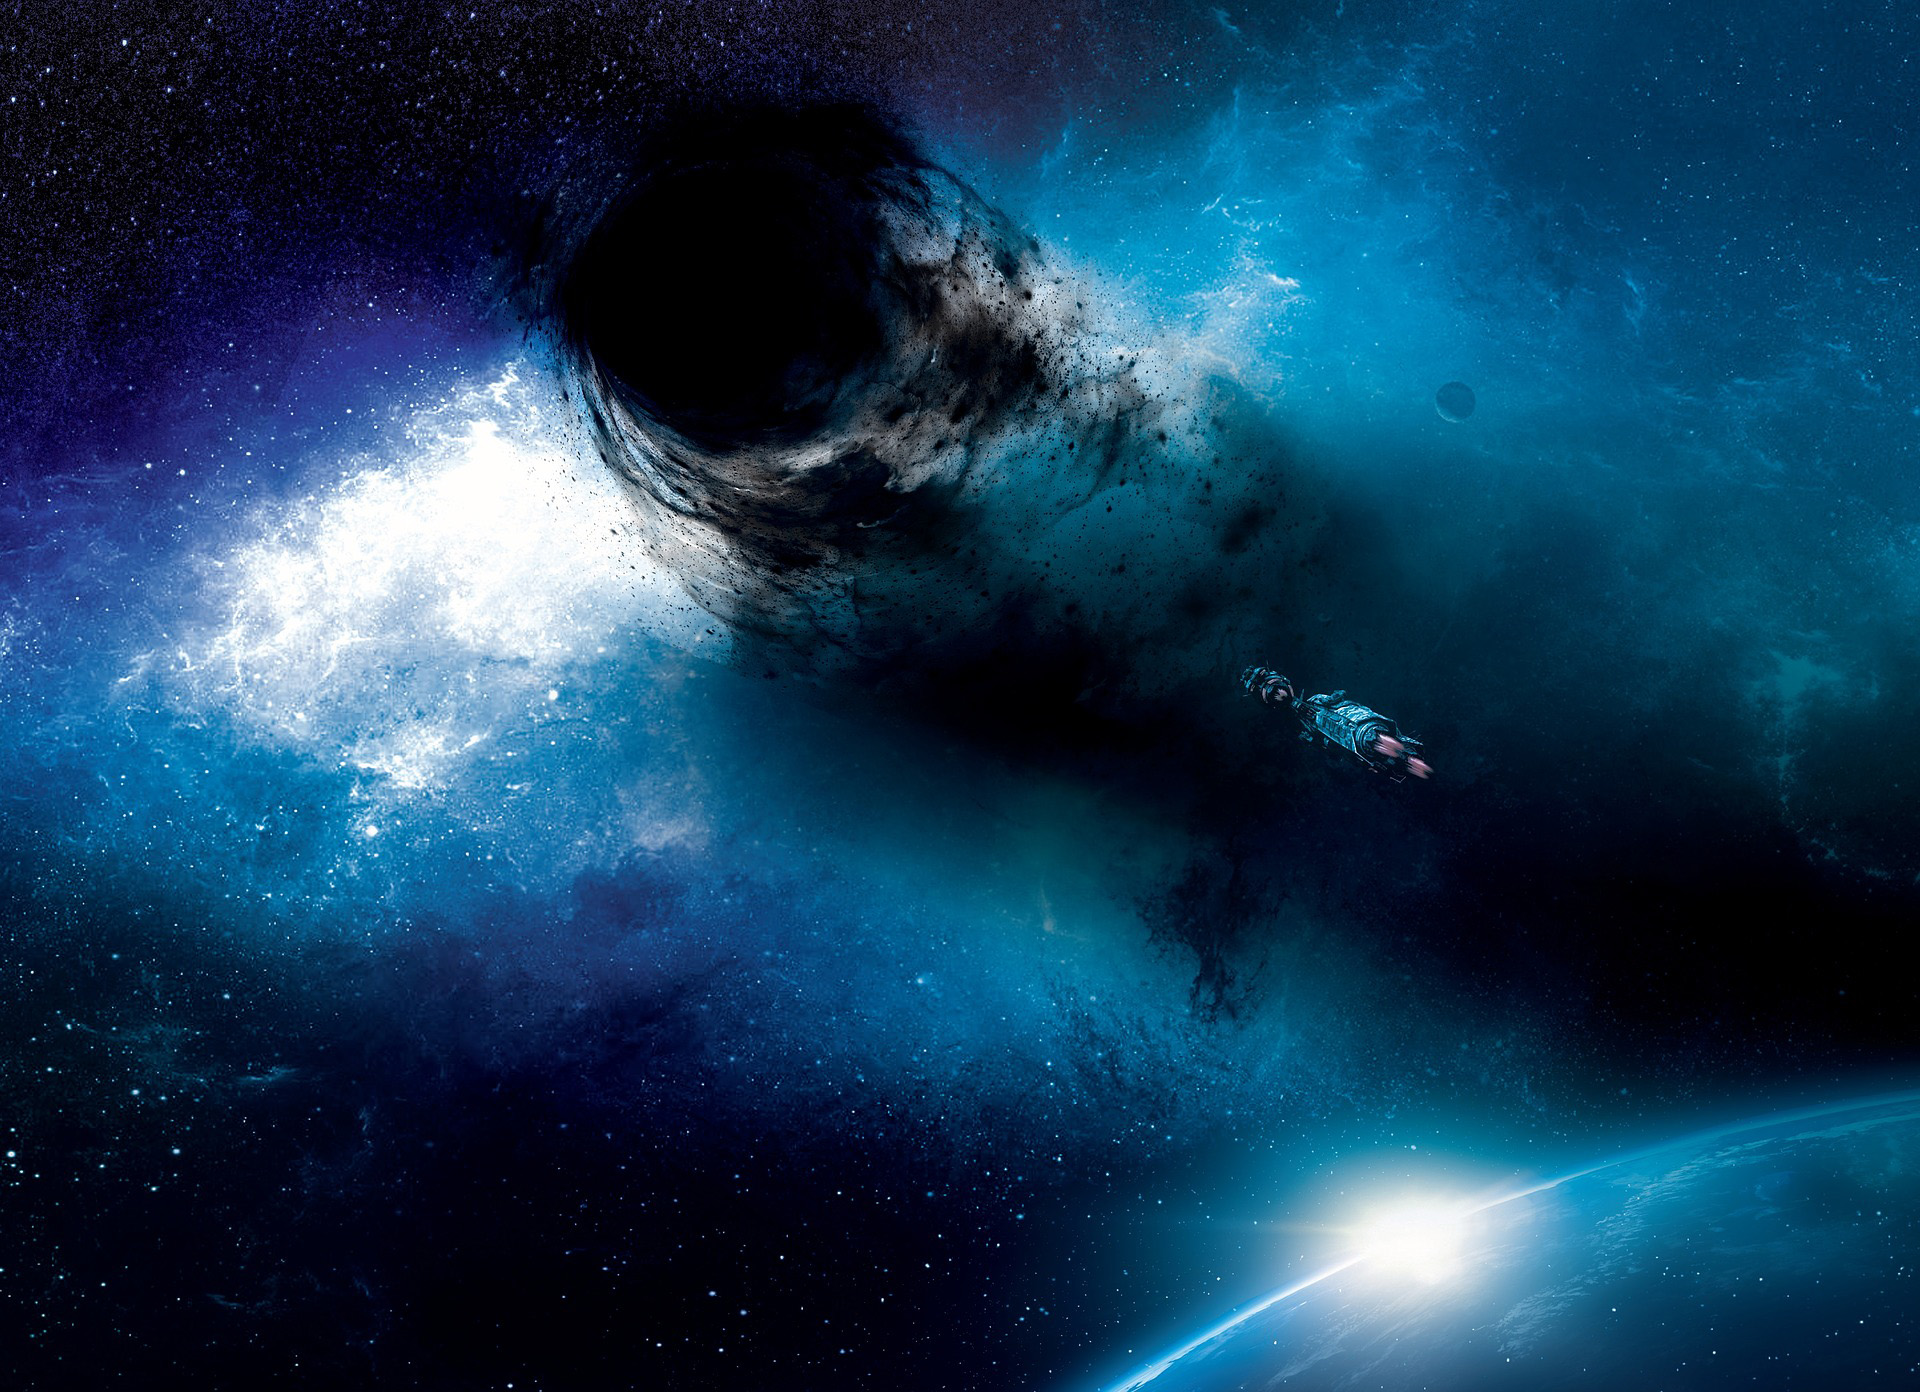 Illustrerad Vetenskap kan inte sluta skriva om Svarta hål - Image: Deselect, licens CC0 1.0, Pixabay.com